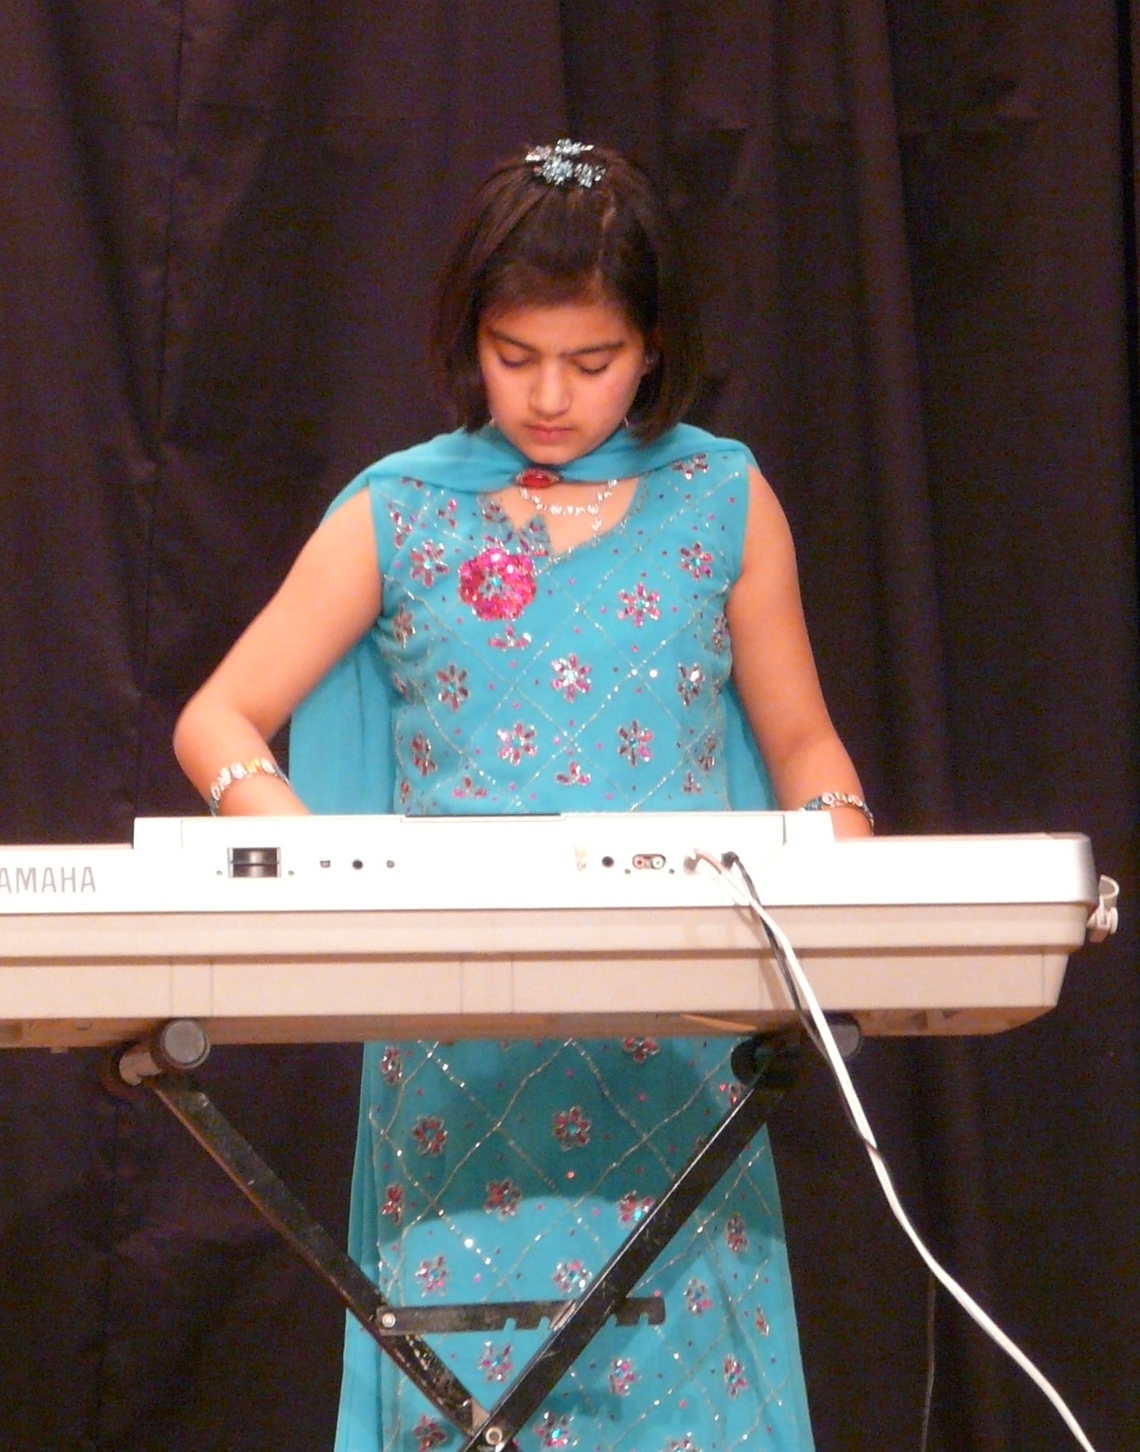 Keyboard- Bollywood Songs Medley